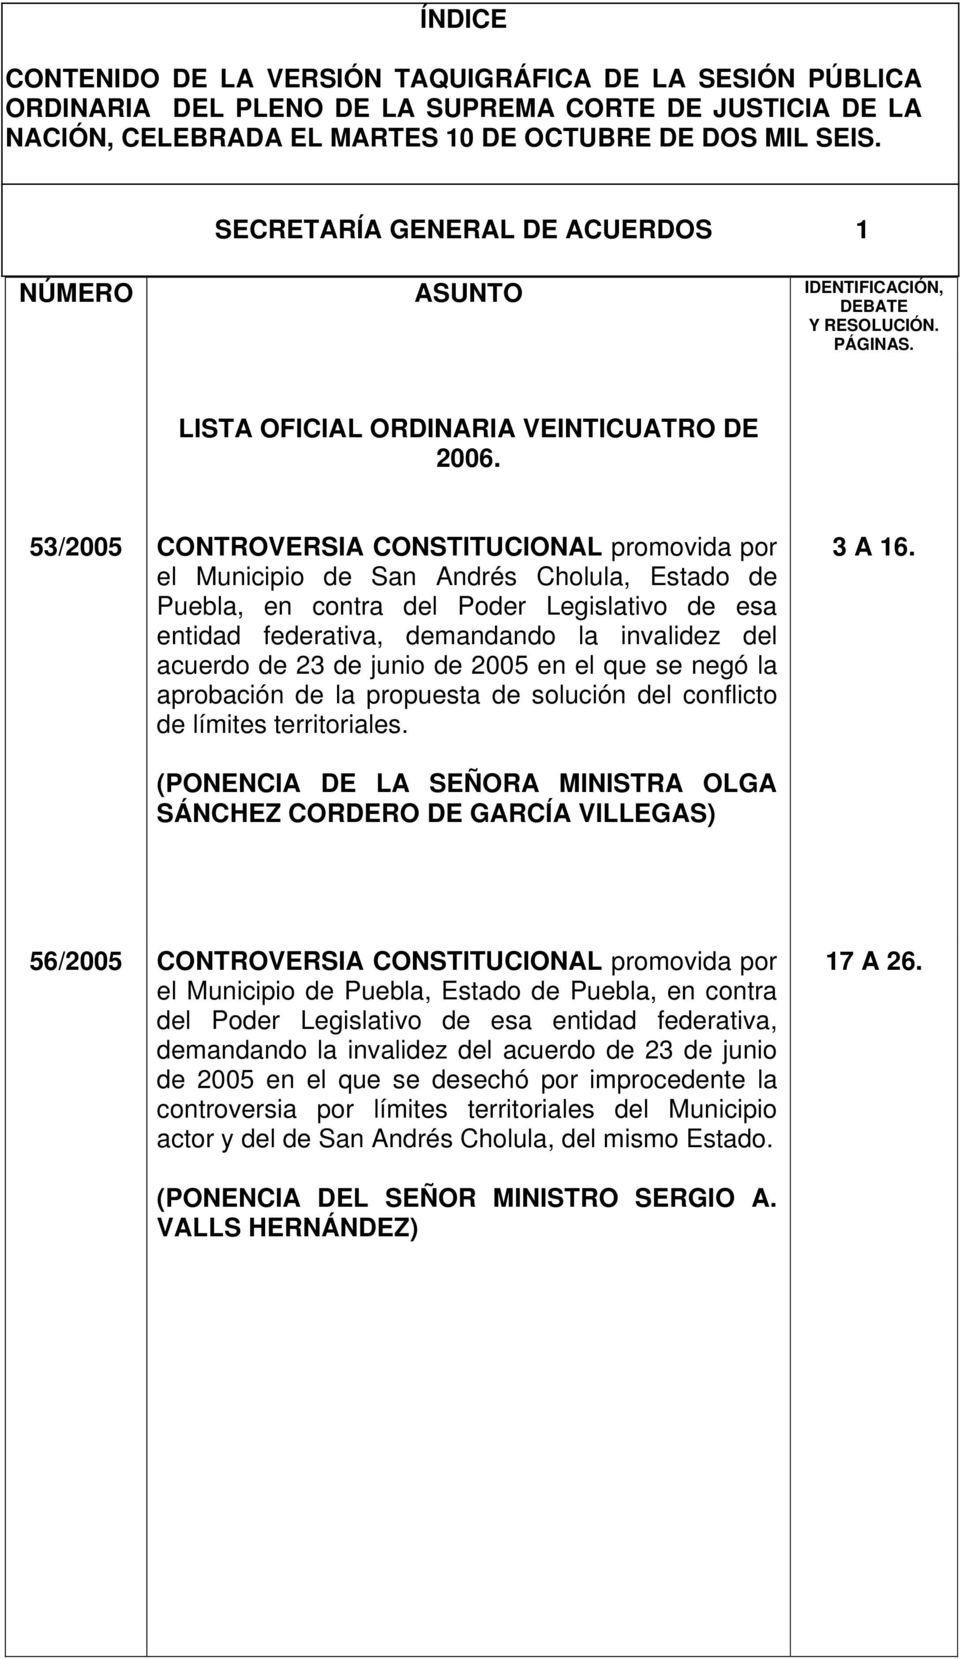 53/2005 CONTROVERSIA CONSTITUCIONAL promovida por el Municipio de San Andrés Cholula, Estado de Puebla, en contra del Poder Legislativo de esa entidad federativa, demandando la invalidez del acuerdo